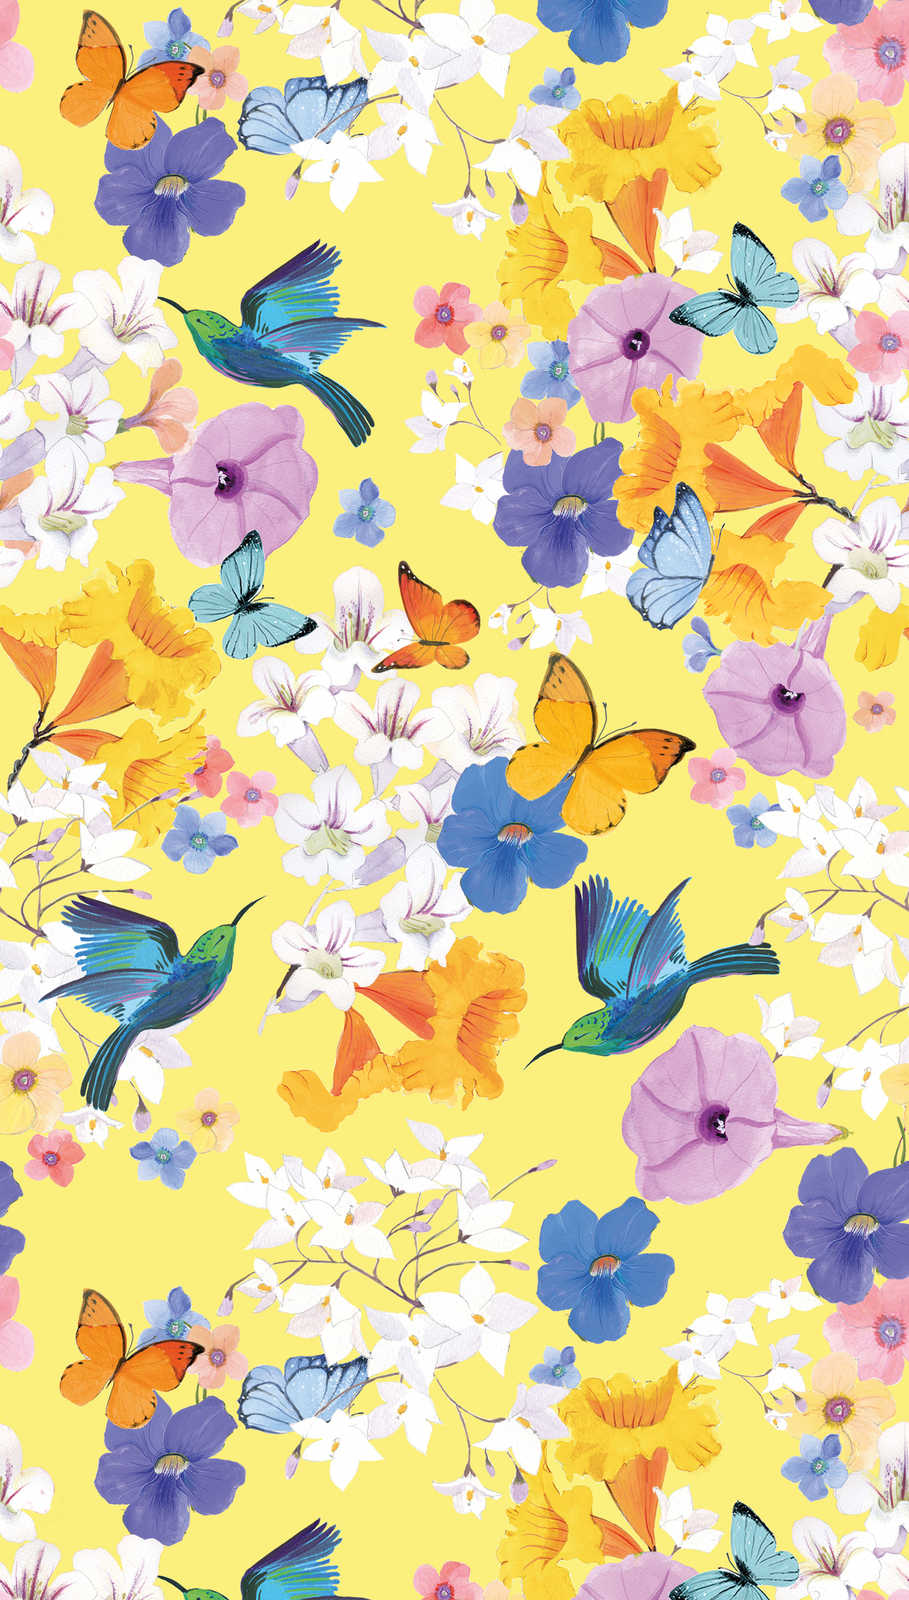             Papier peint fleuri avec papillons et oiseaux - multicolore, jaune, bleu
        